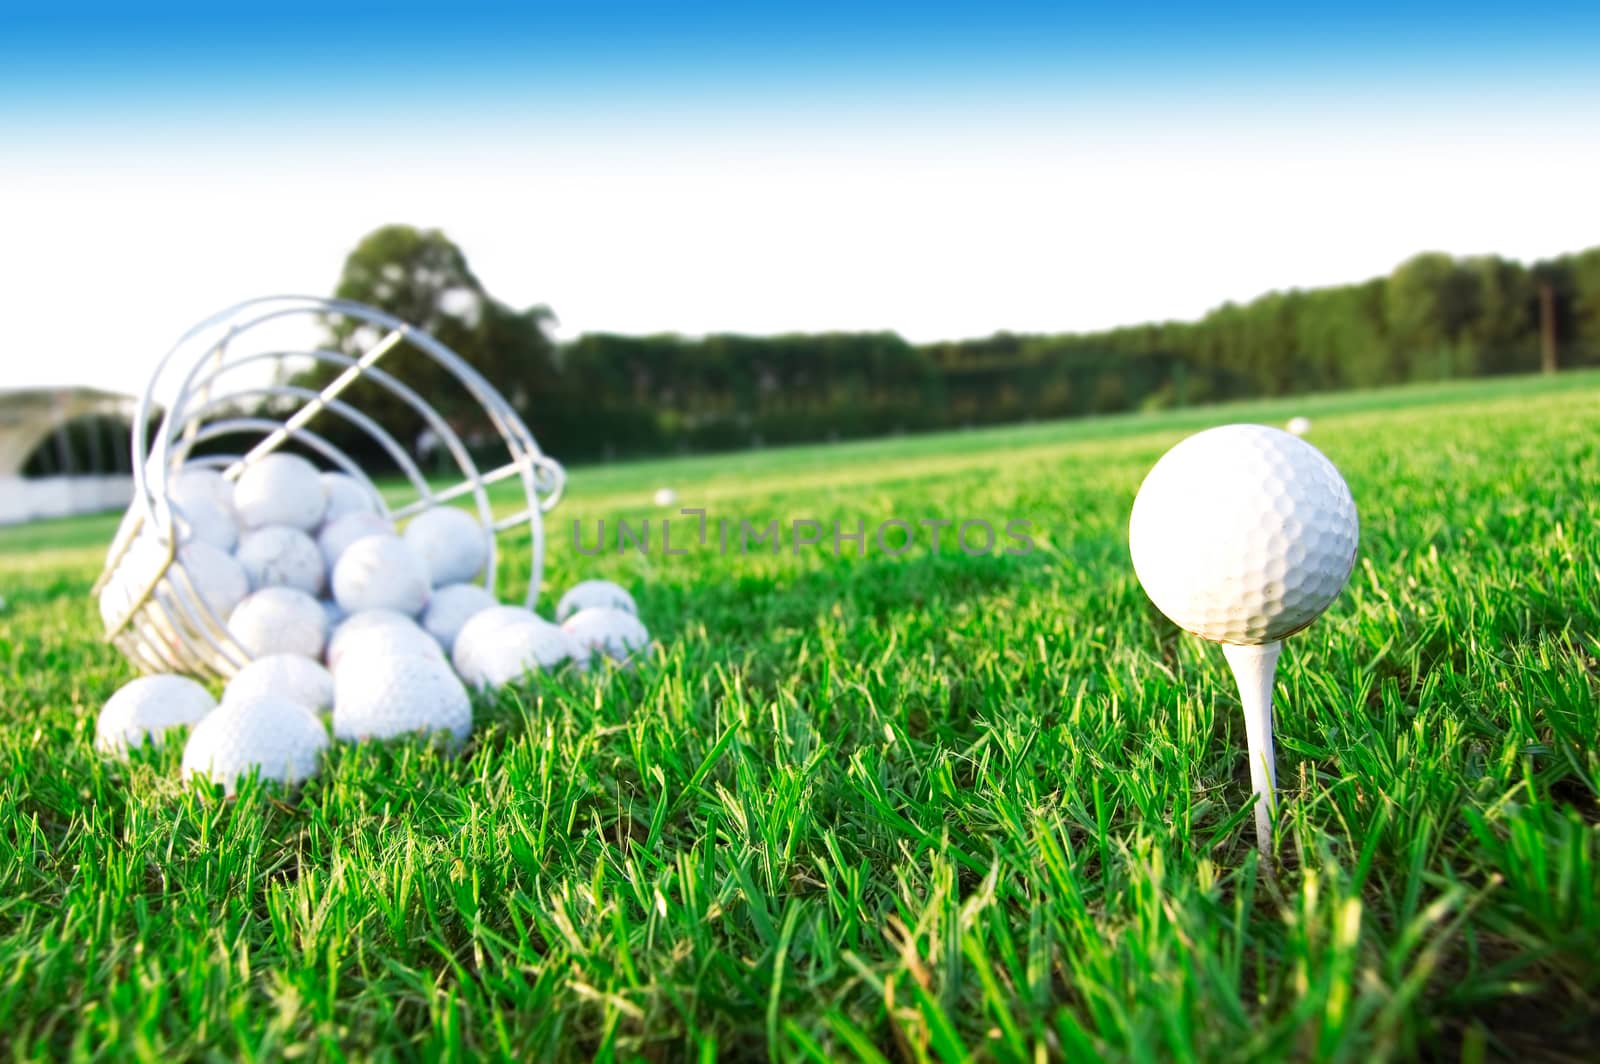 Golf game. Golf balls in grass.